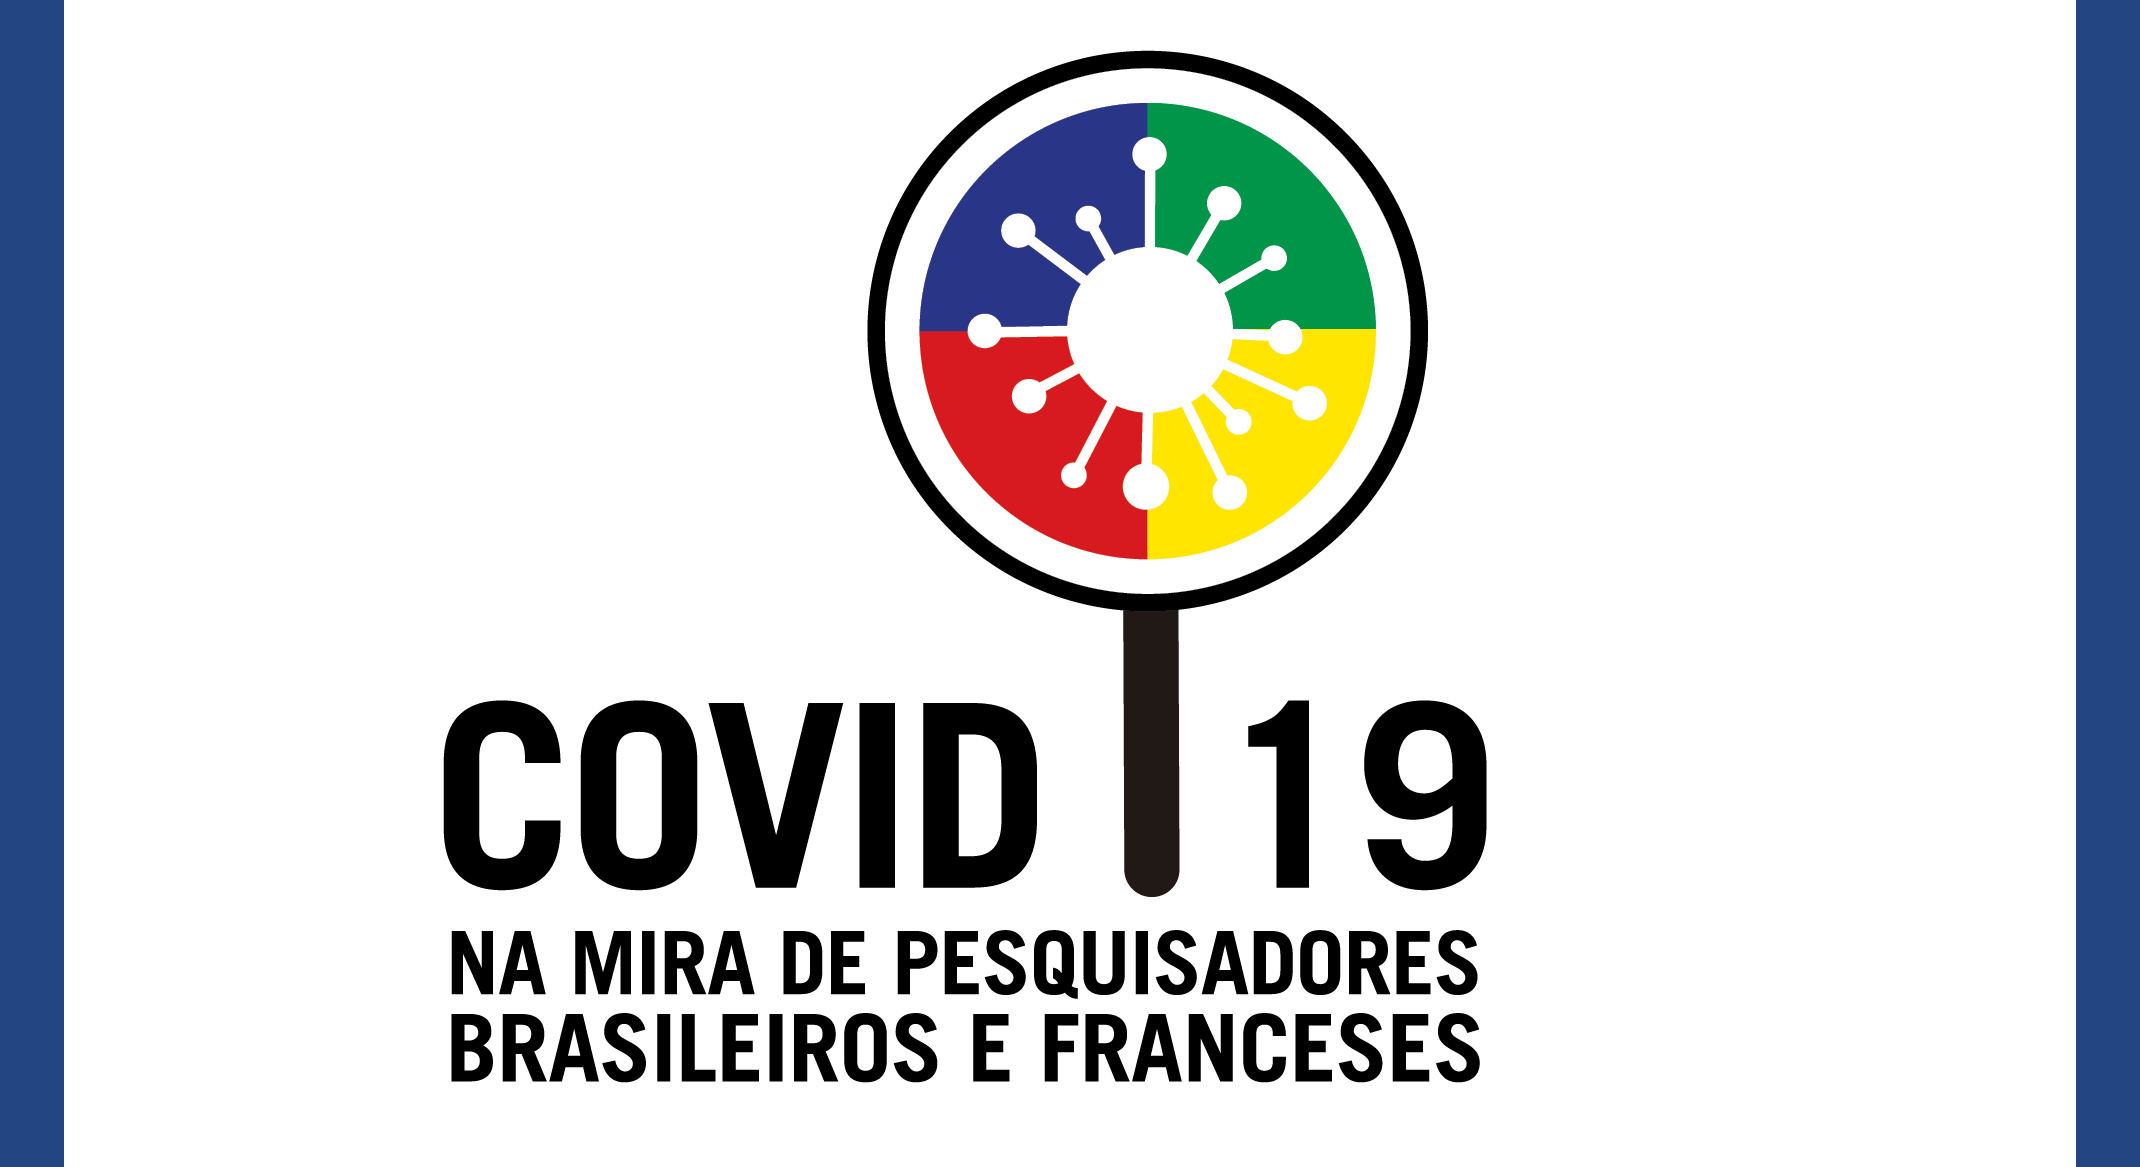 Entidades se unem na organização do ciclo de palestras “Covid-19 na mira de pesquisadores brasileiros e franceses” que acontecerá durante 2021